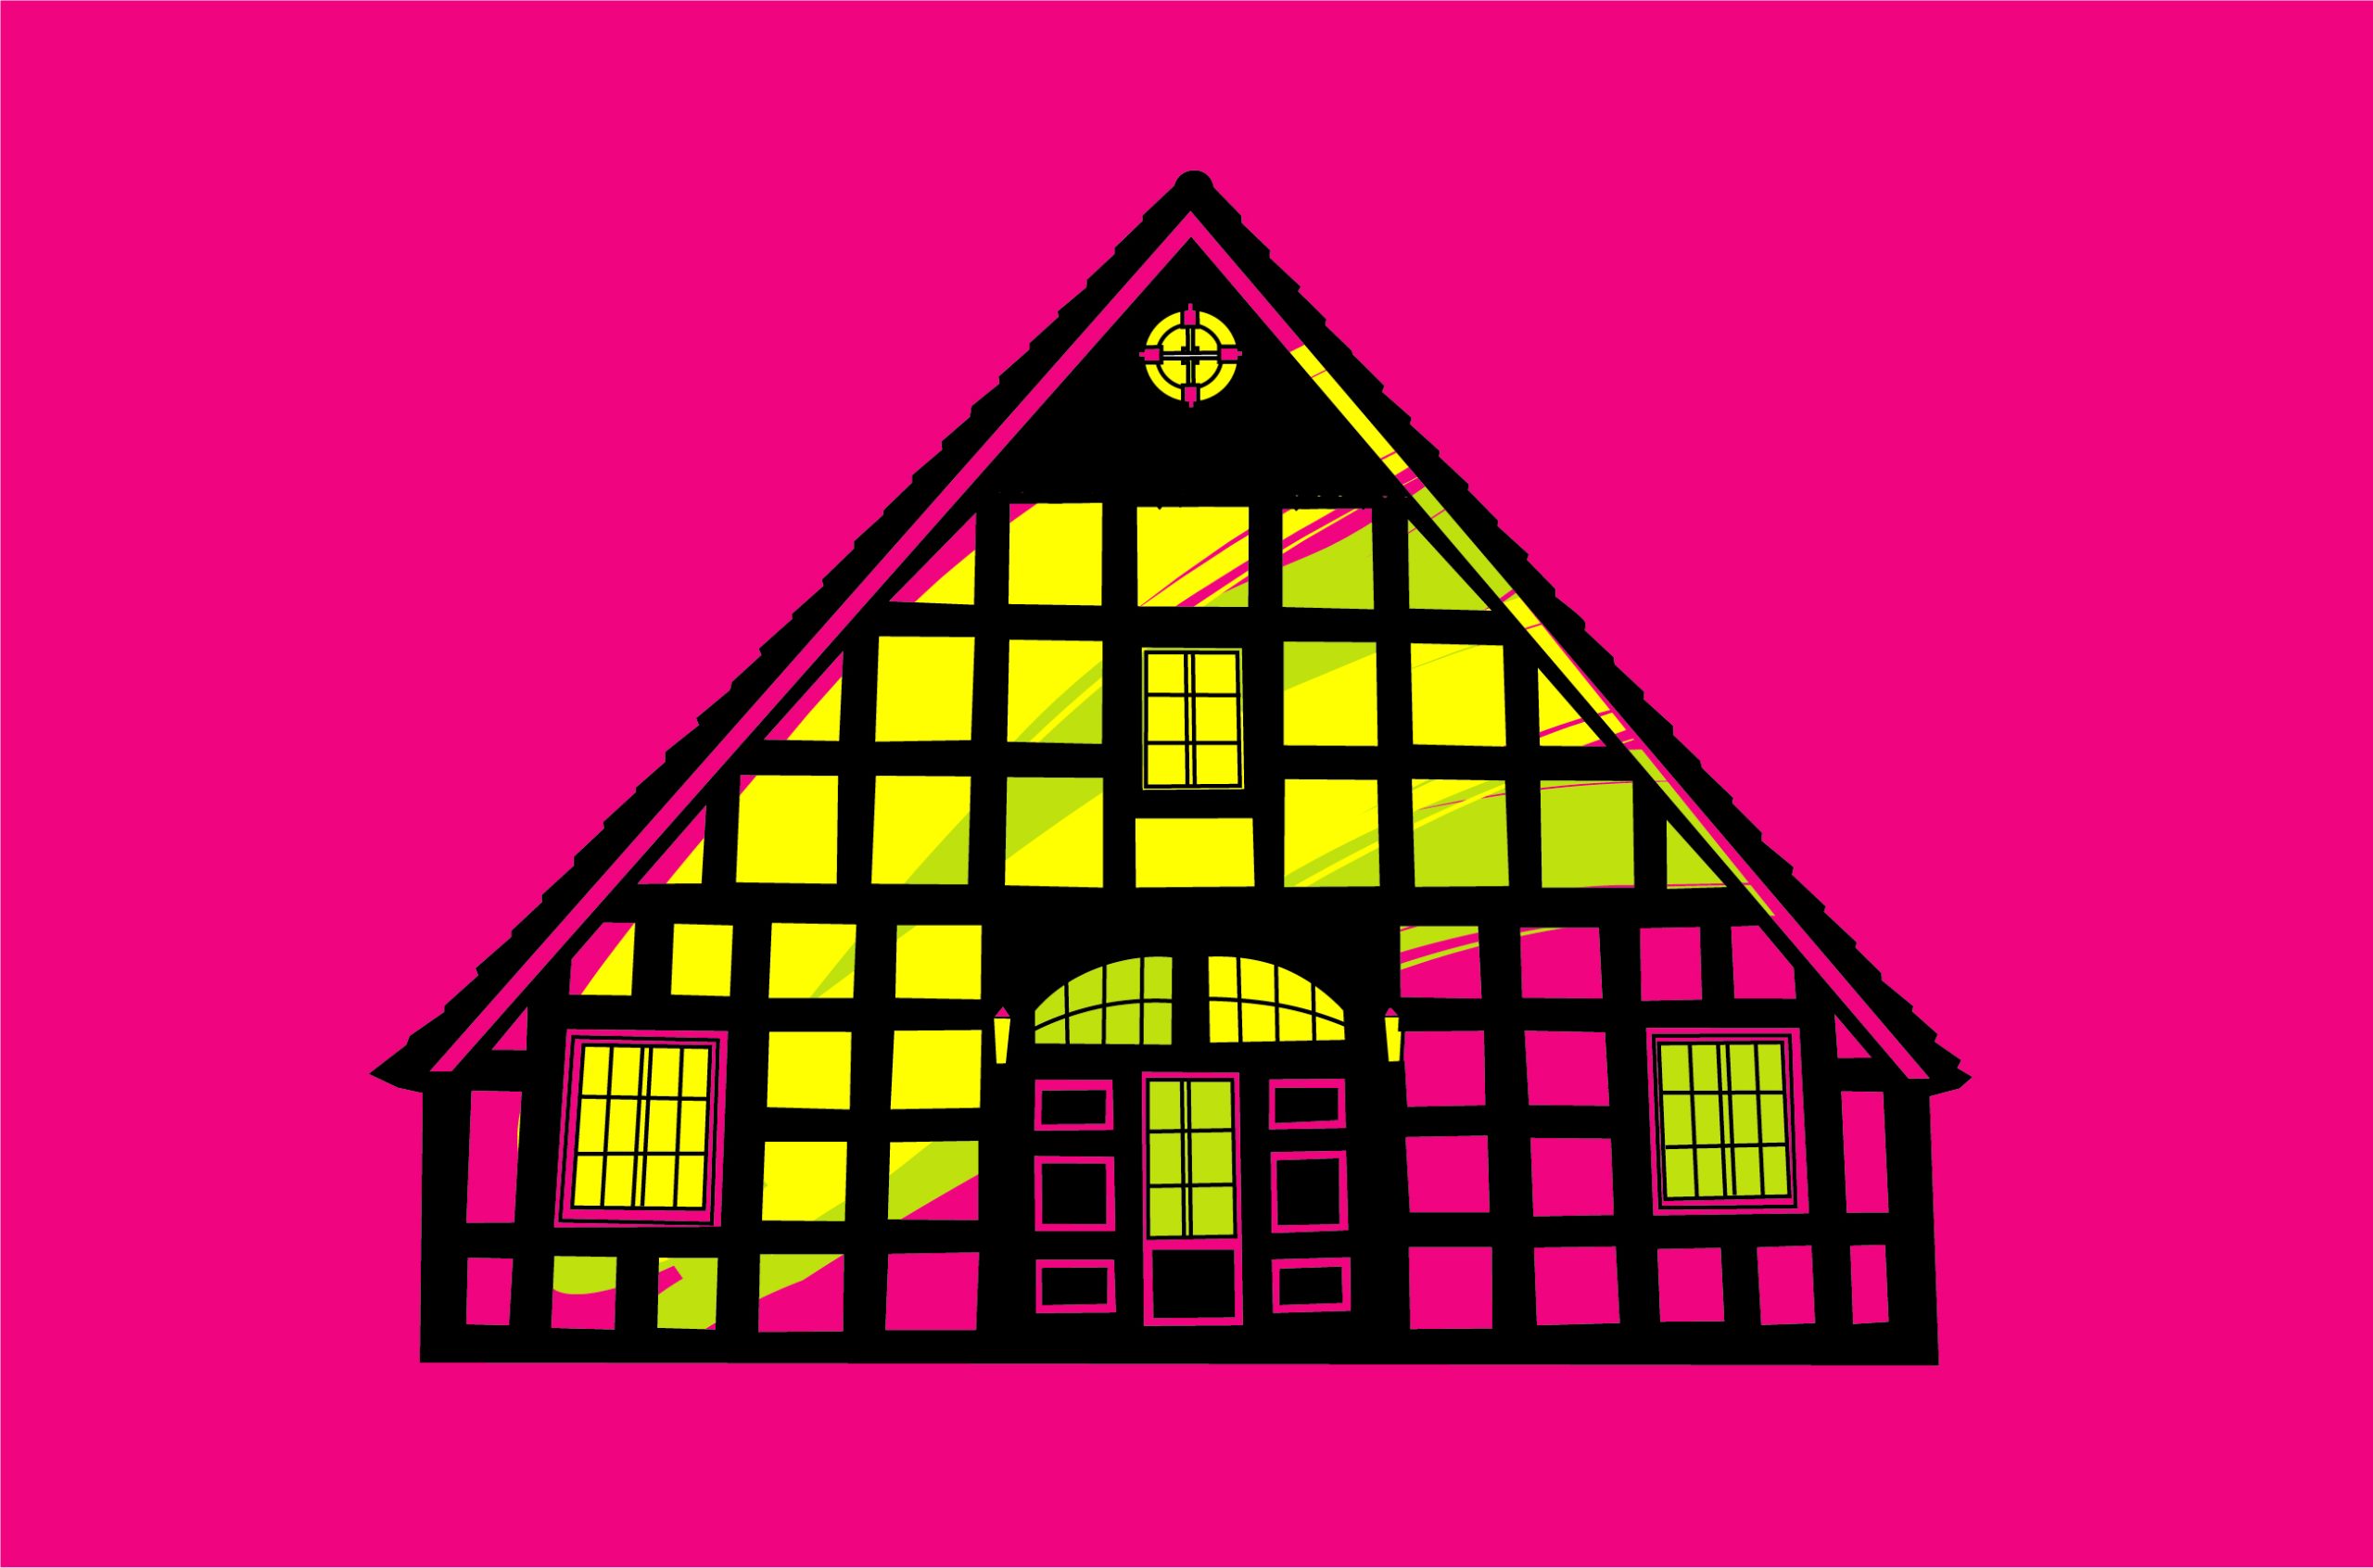 Gezeichnete Front eines Fachwerkhaus auf pinkem Hintergrund.